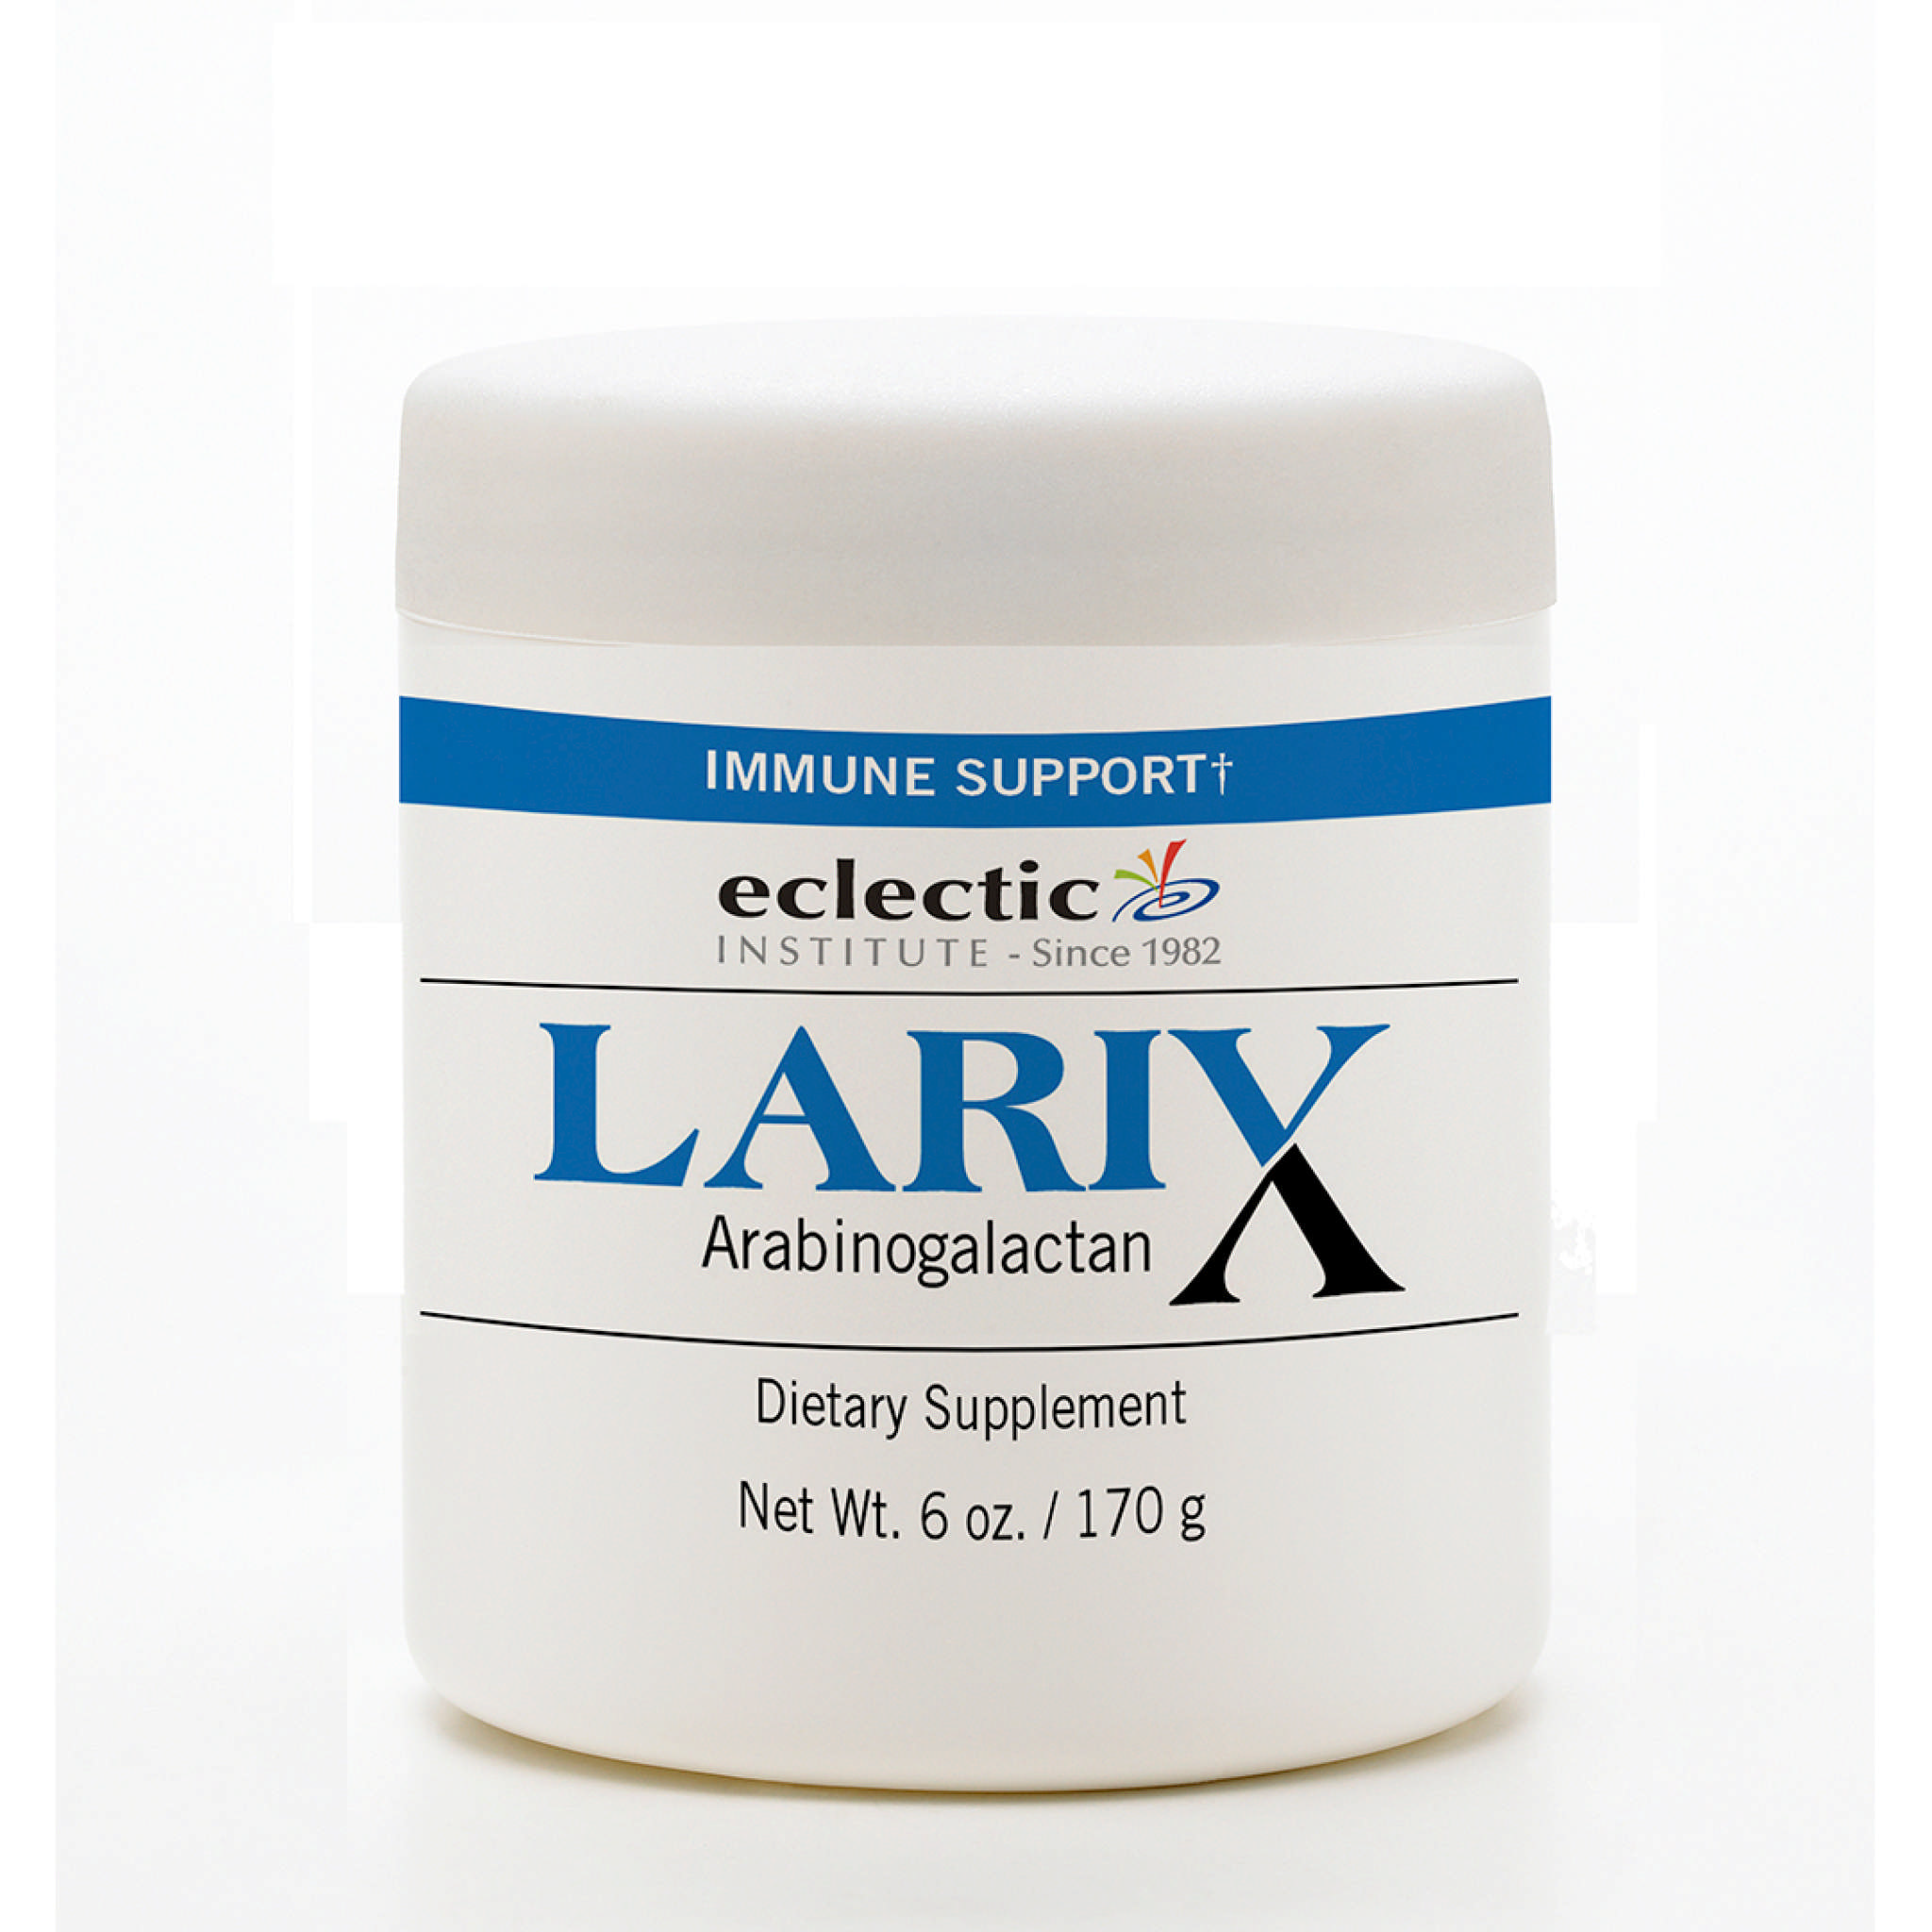 Eclectic Institute - Larix powder